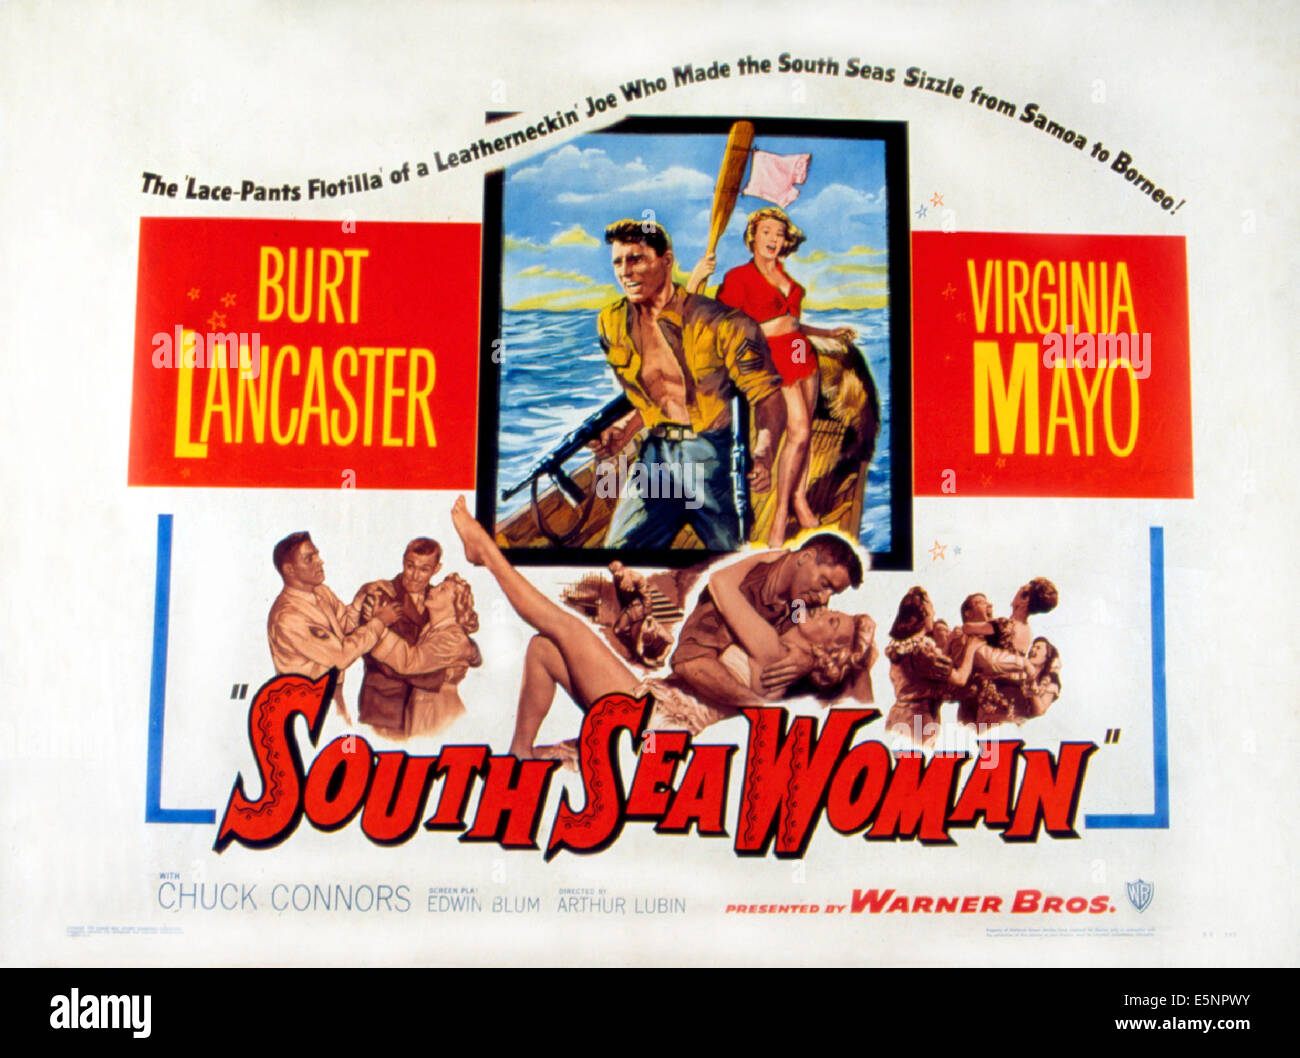 SOUTH SEA WOMAN, Burt Lancaster, Virginia Mayo, 1953 Stock Photo